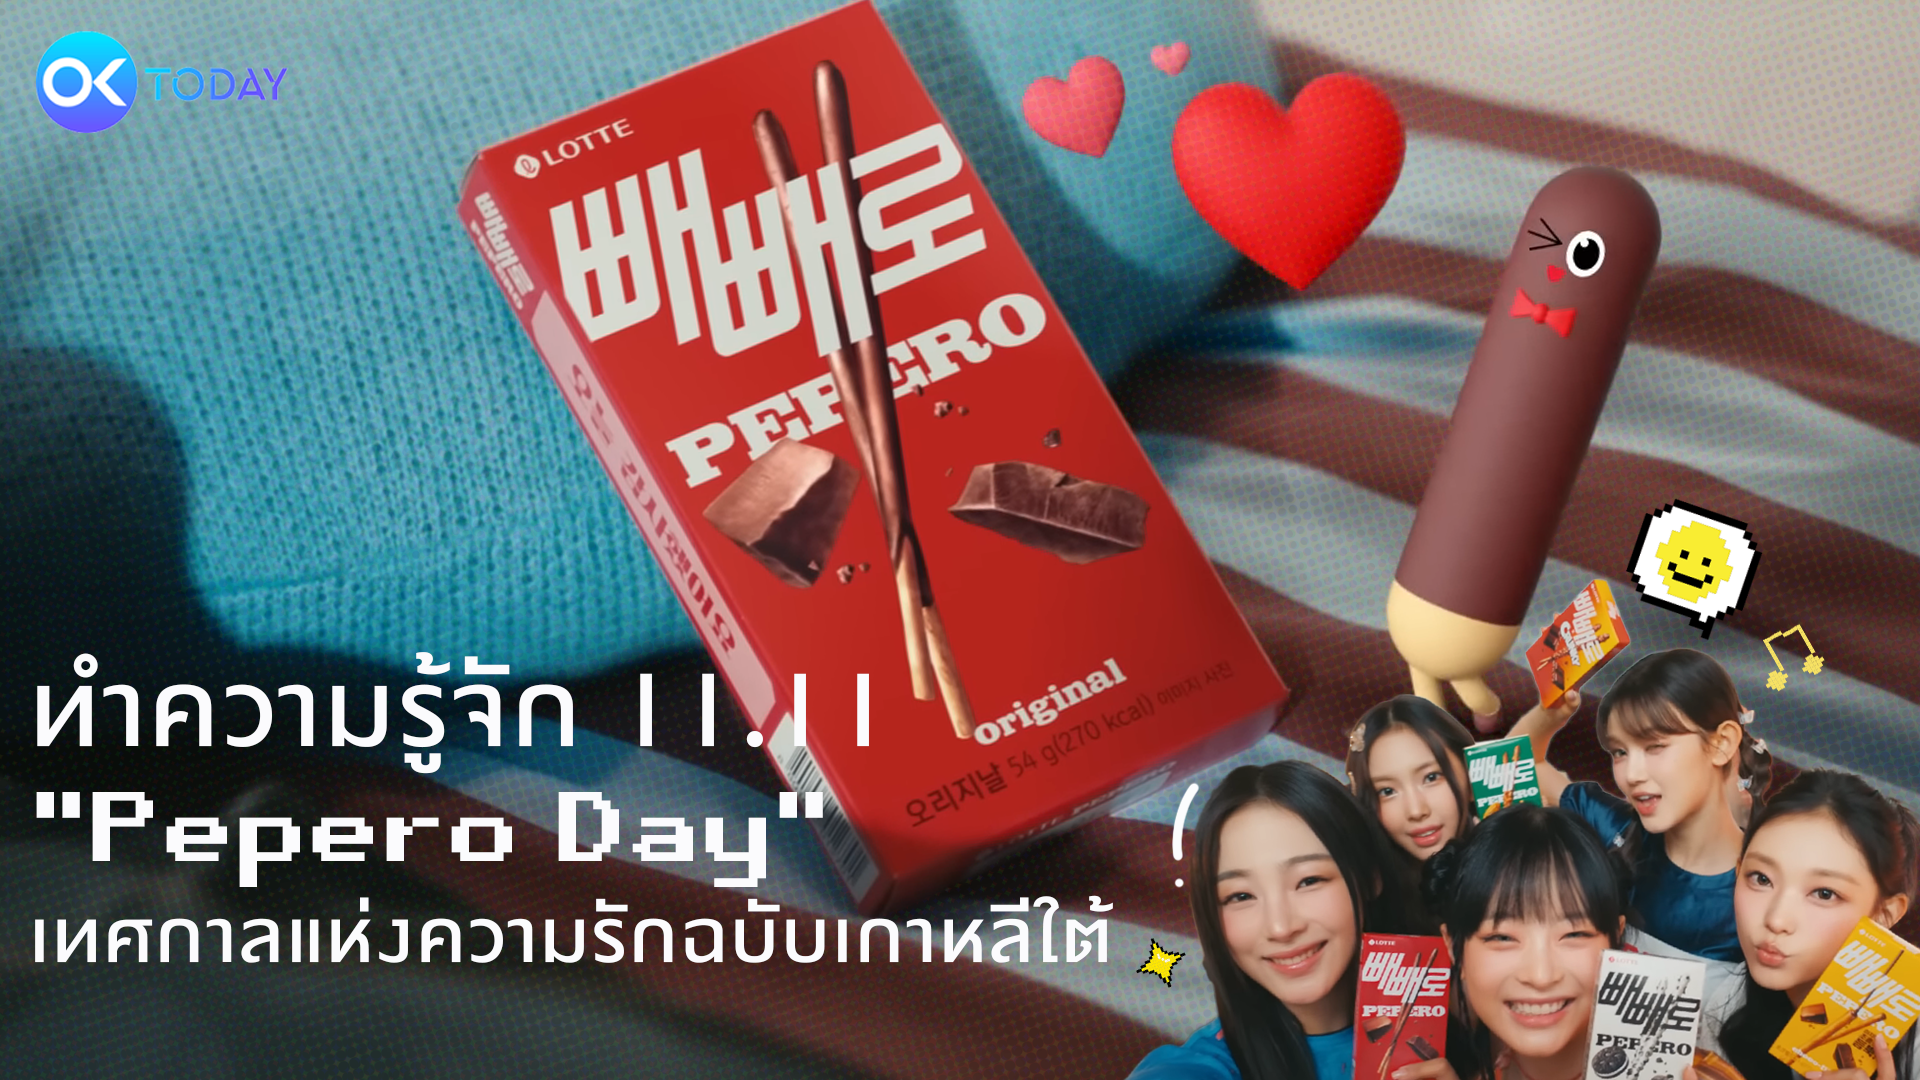 ทำความรู้จักวันที่ 11 เดือน 11  “Pepero Day” (เปเปโร่ เดย์) เทศกาลแห่งความรักฉบับเกาหลีใต้